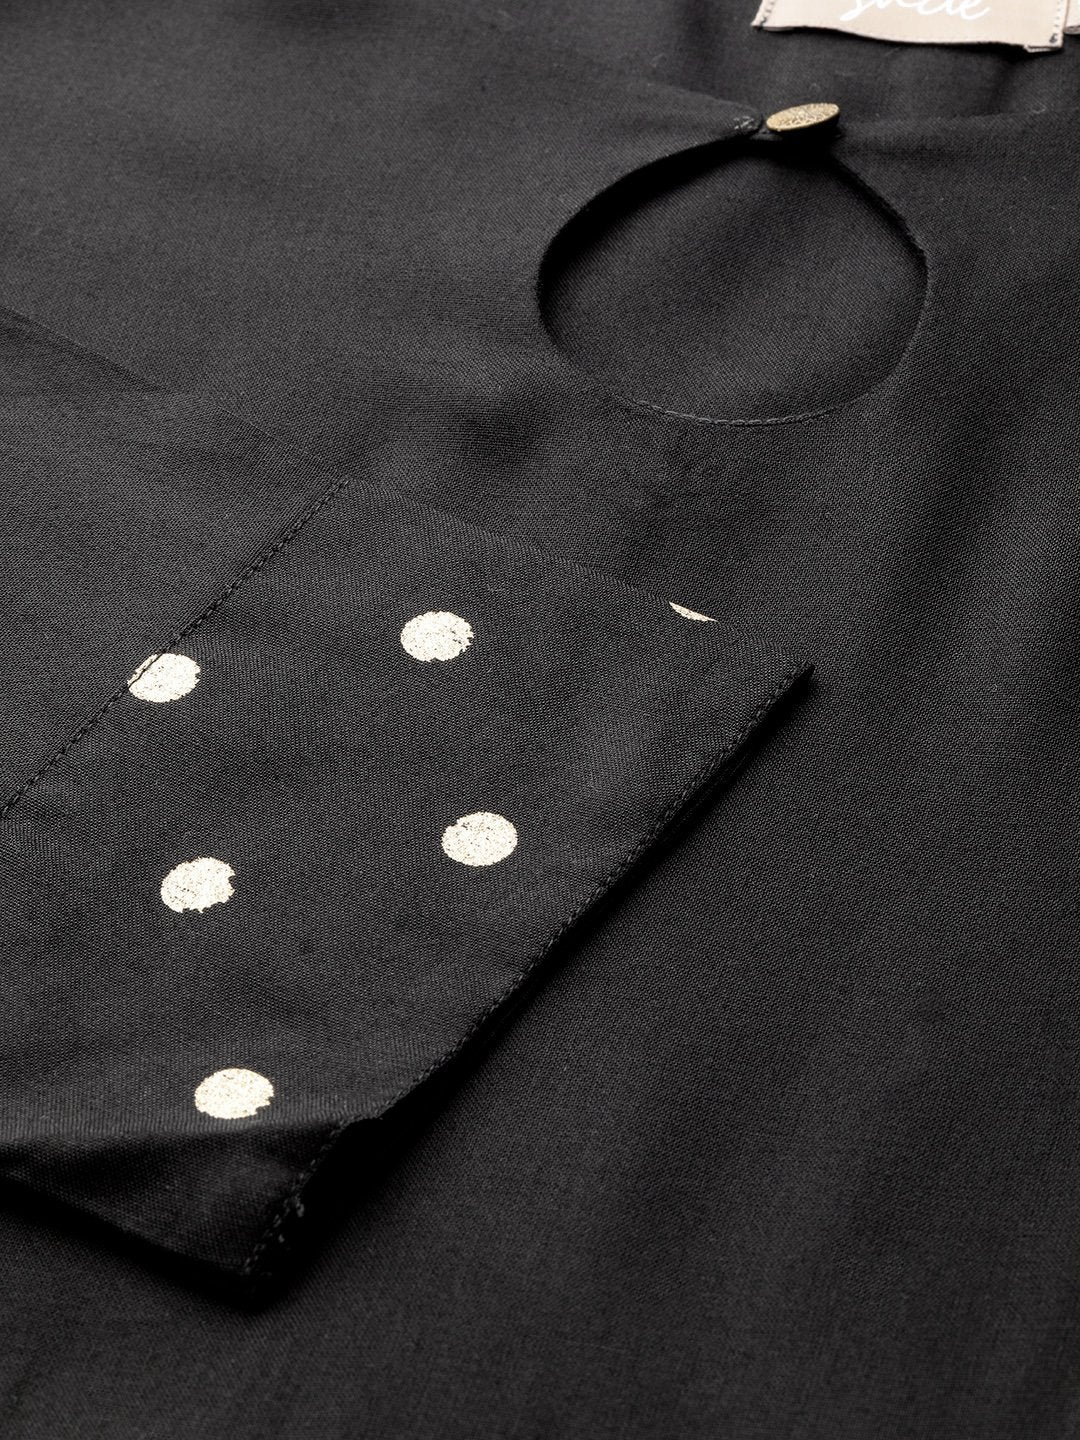 Women's Black Foil Print Cuff Sleeve Anarkali Kurta - SHAE